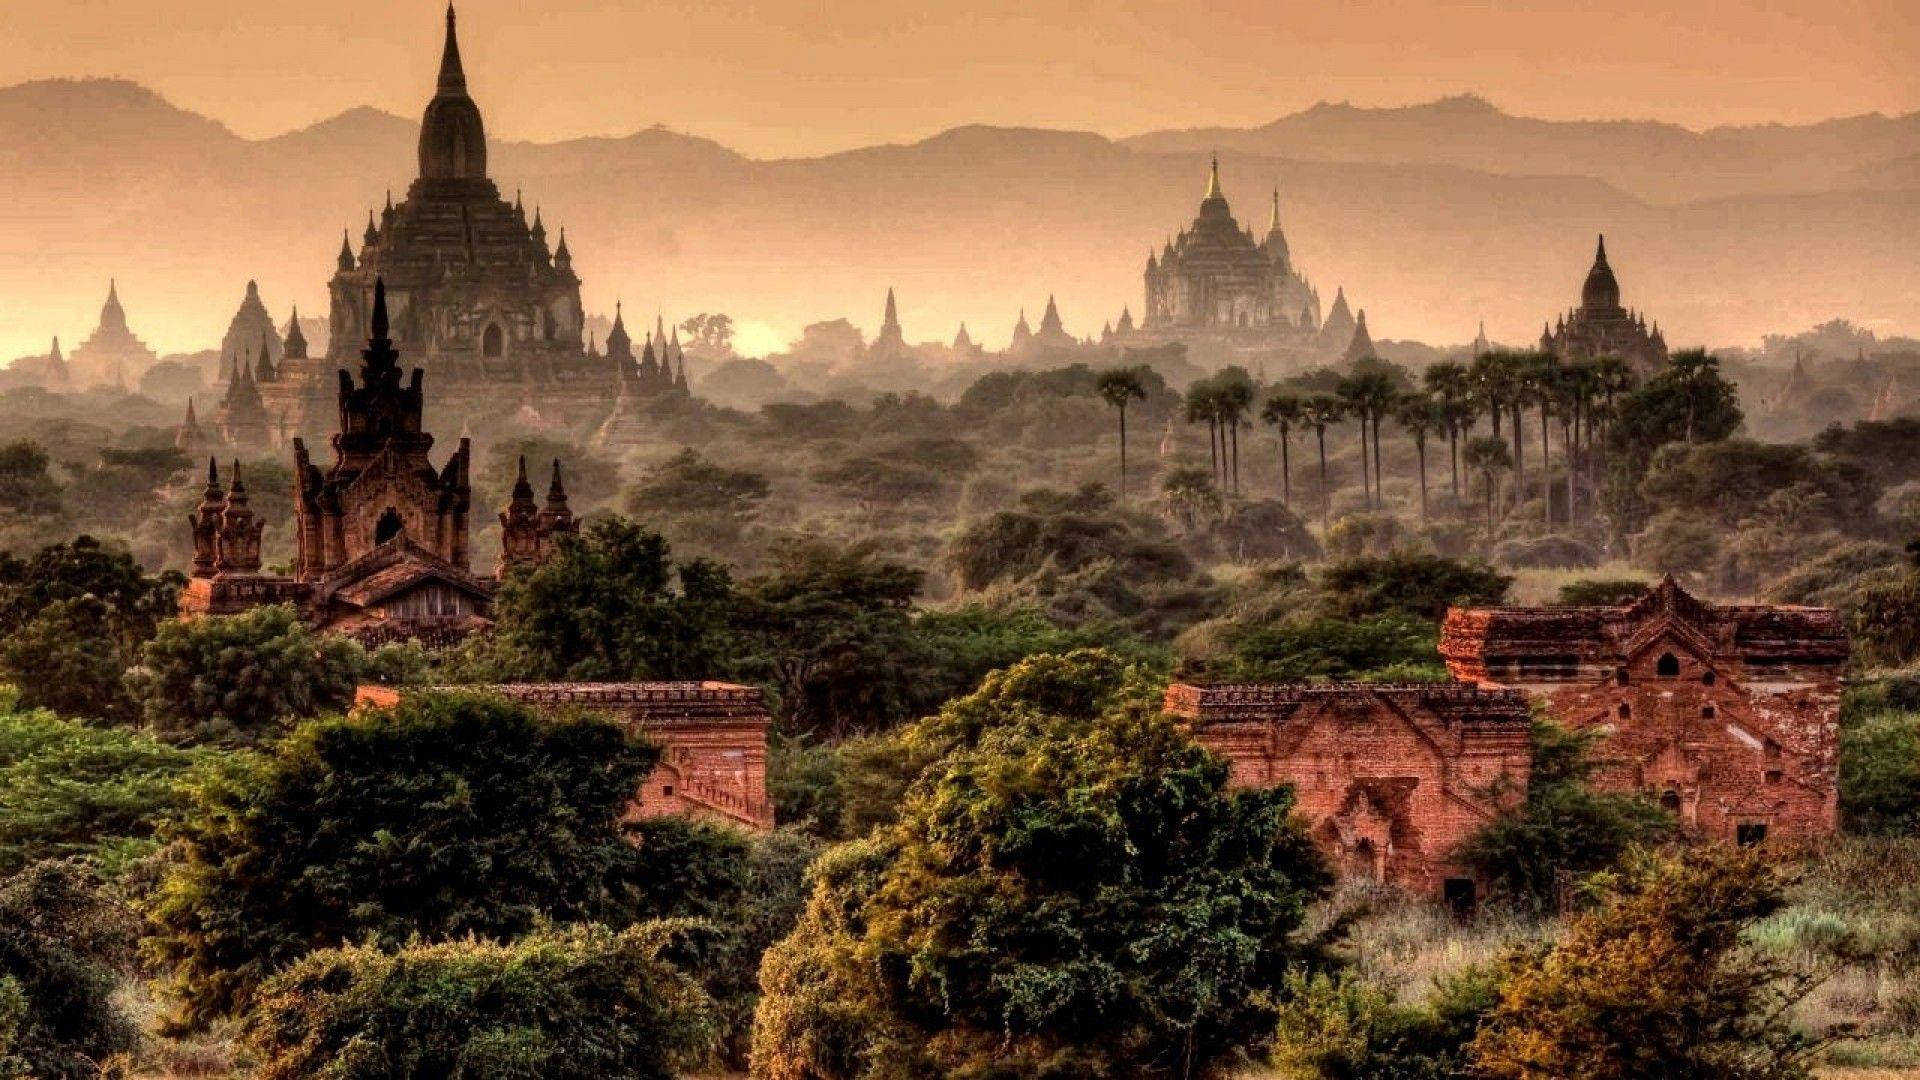 Burma Aesthetic Stone Pagodas